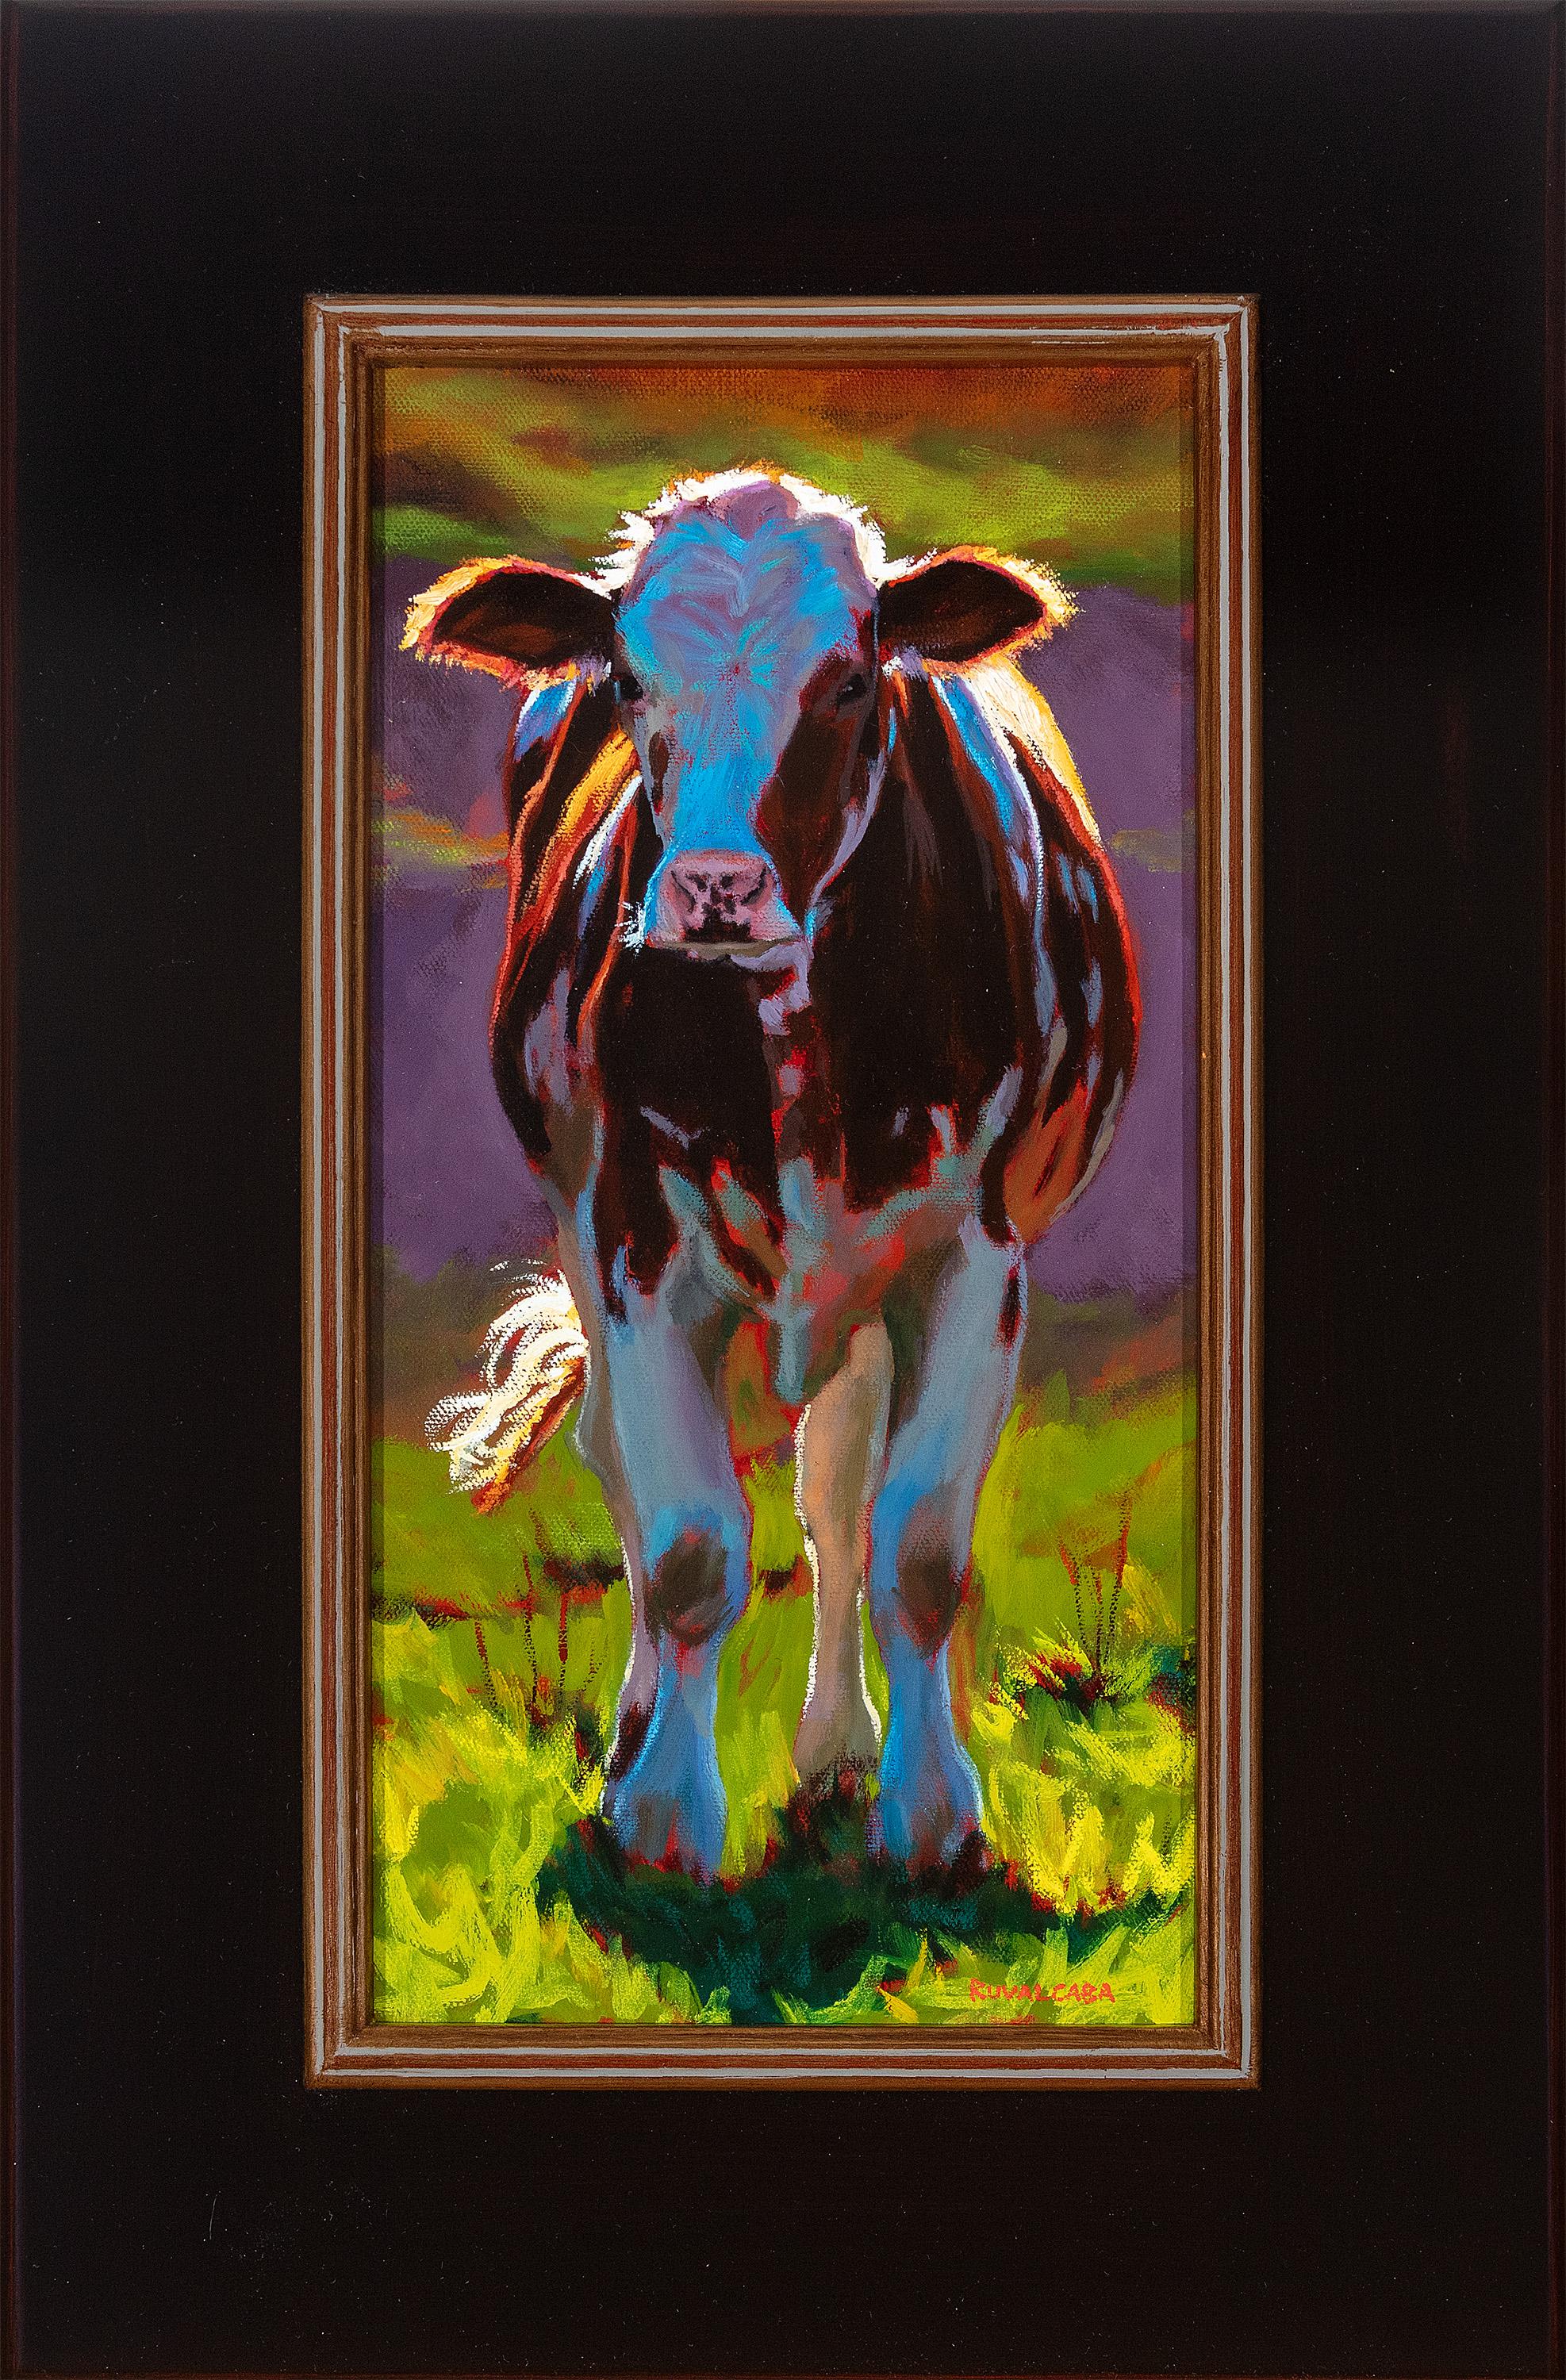 Animal Painting Cathryn Ruvalcaba - « Sunshine » réalisme haut de gamme, animaux, vaches, ferme, extérieur